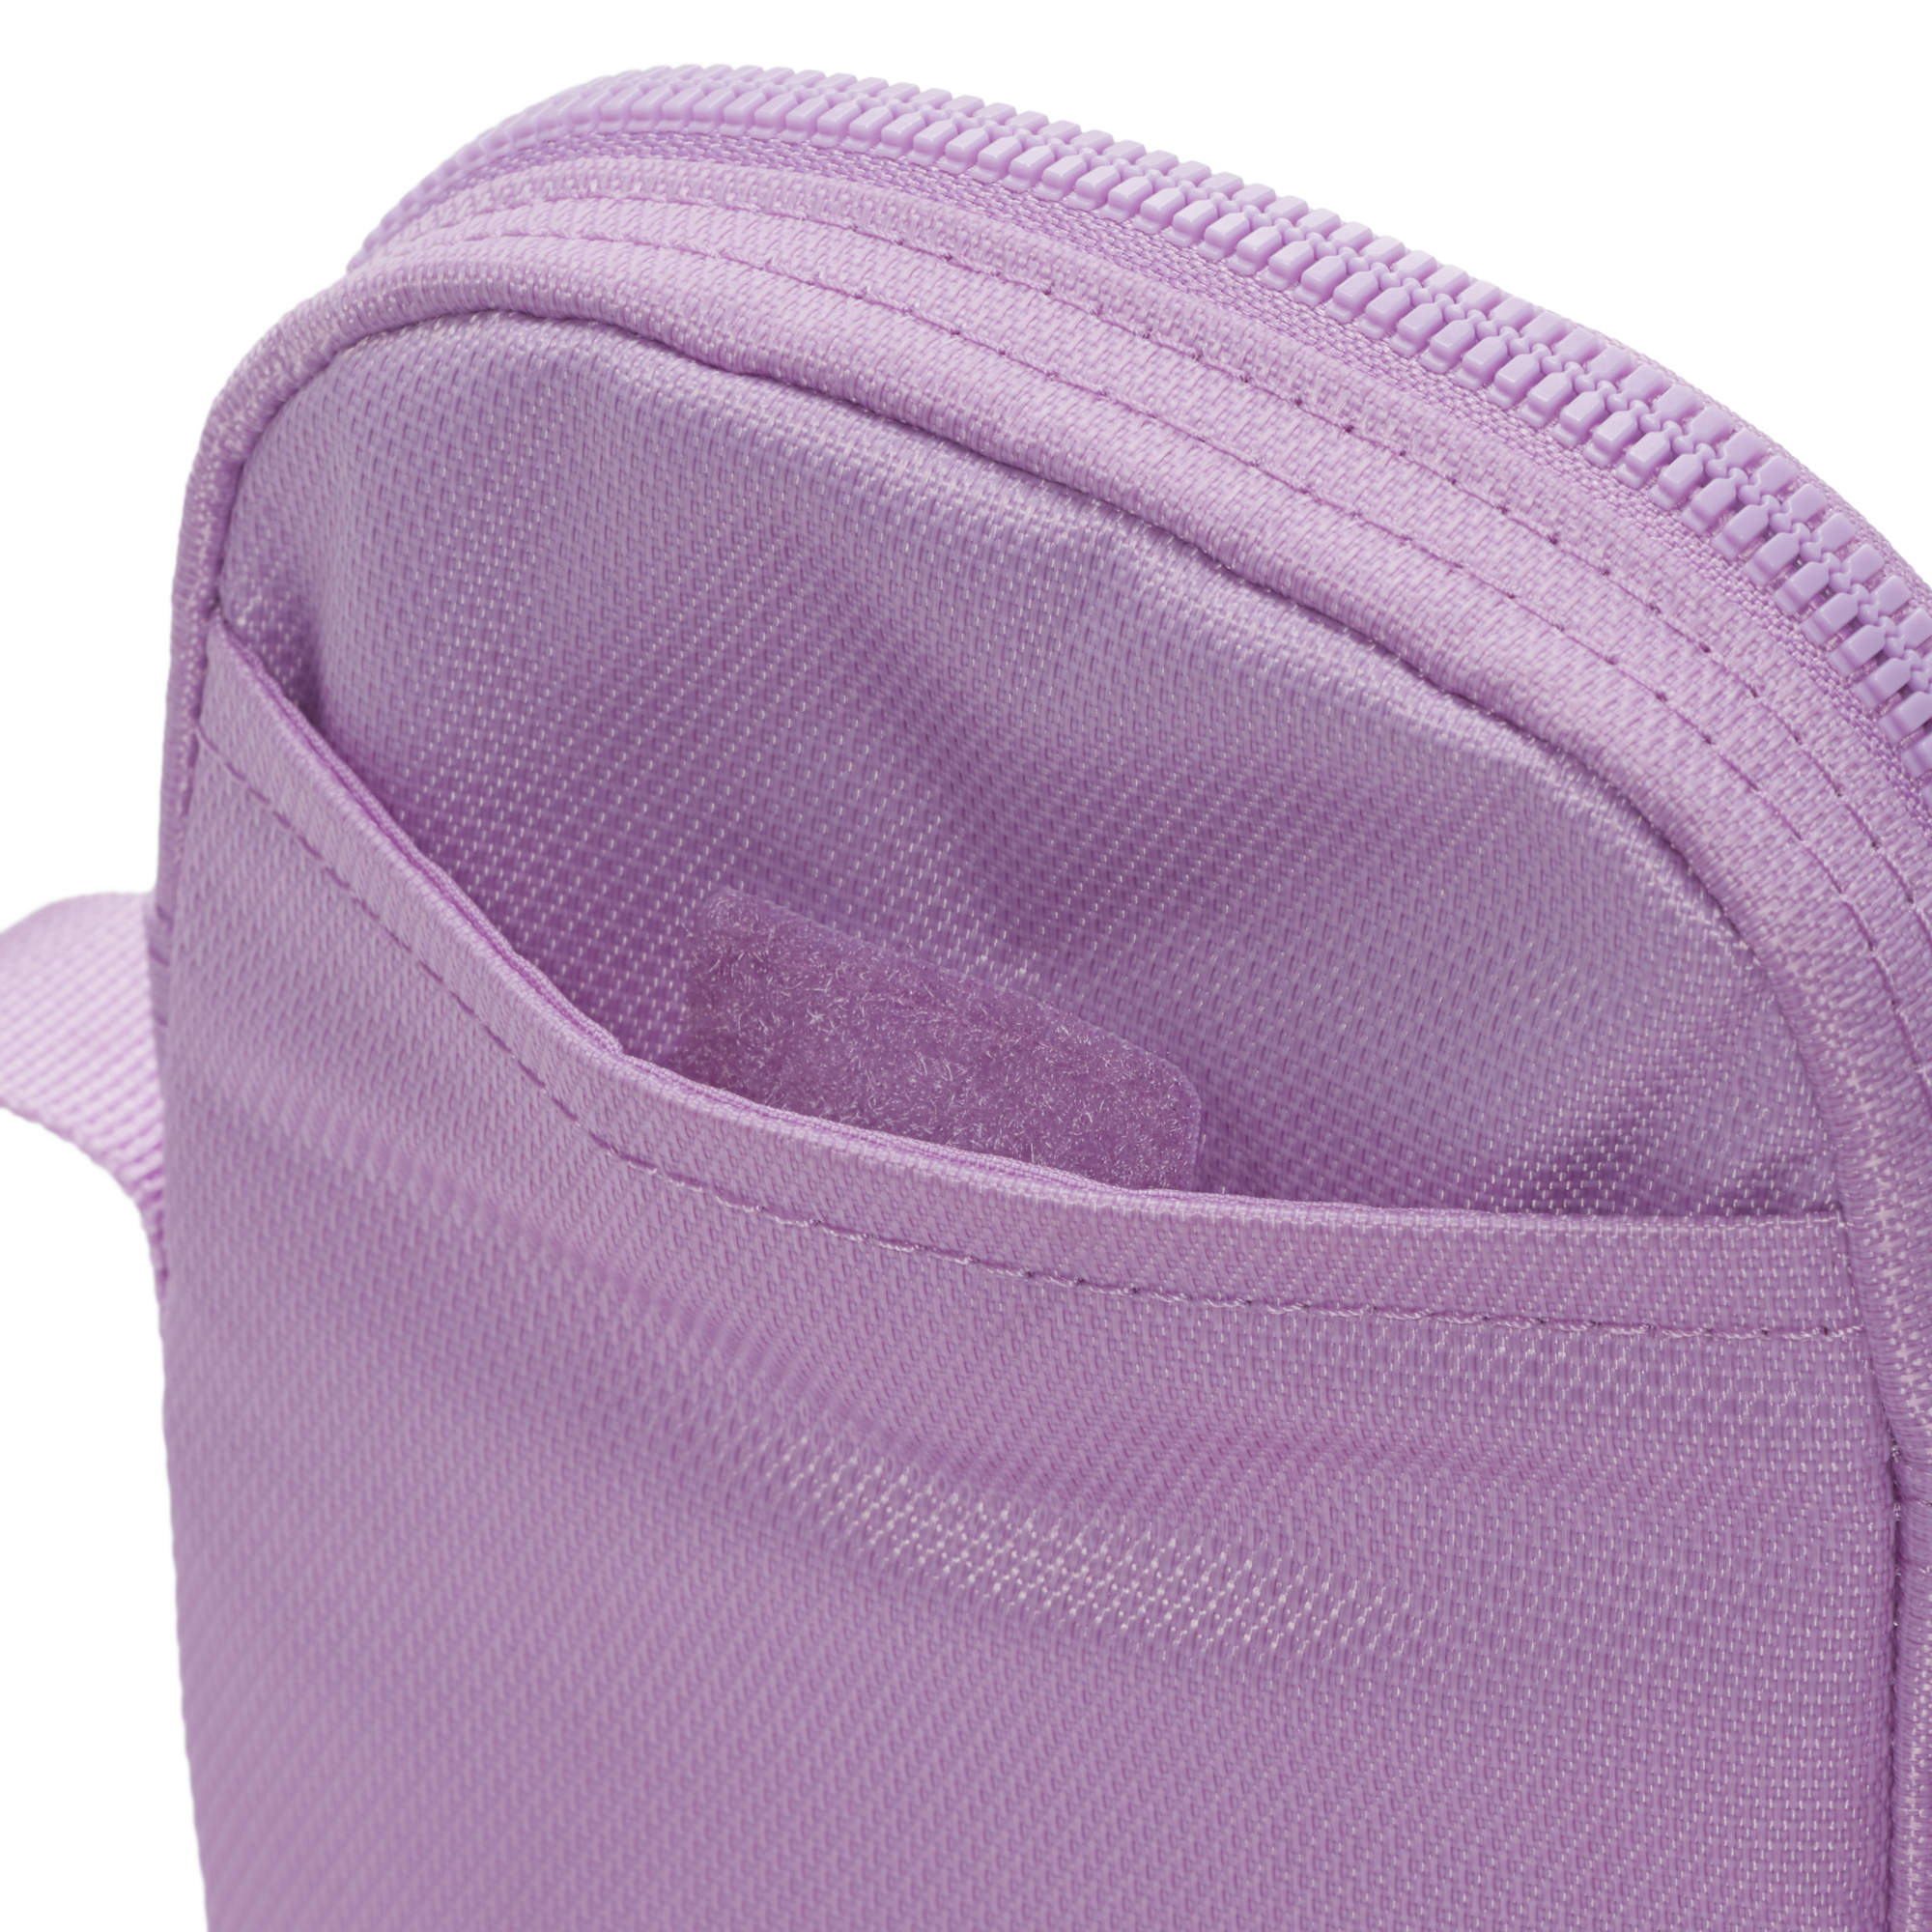 Nike body bag Rs 210 Rt 240 #msy - Marsie's clothingph